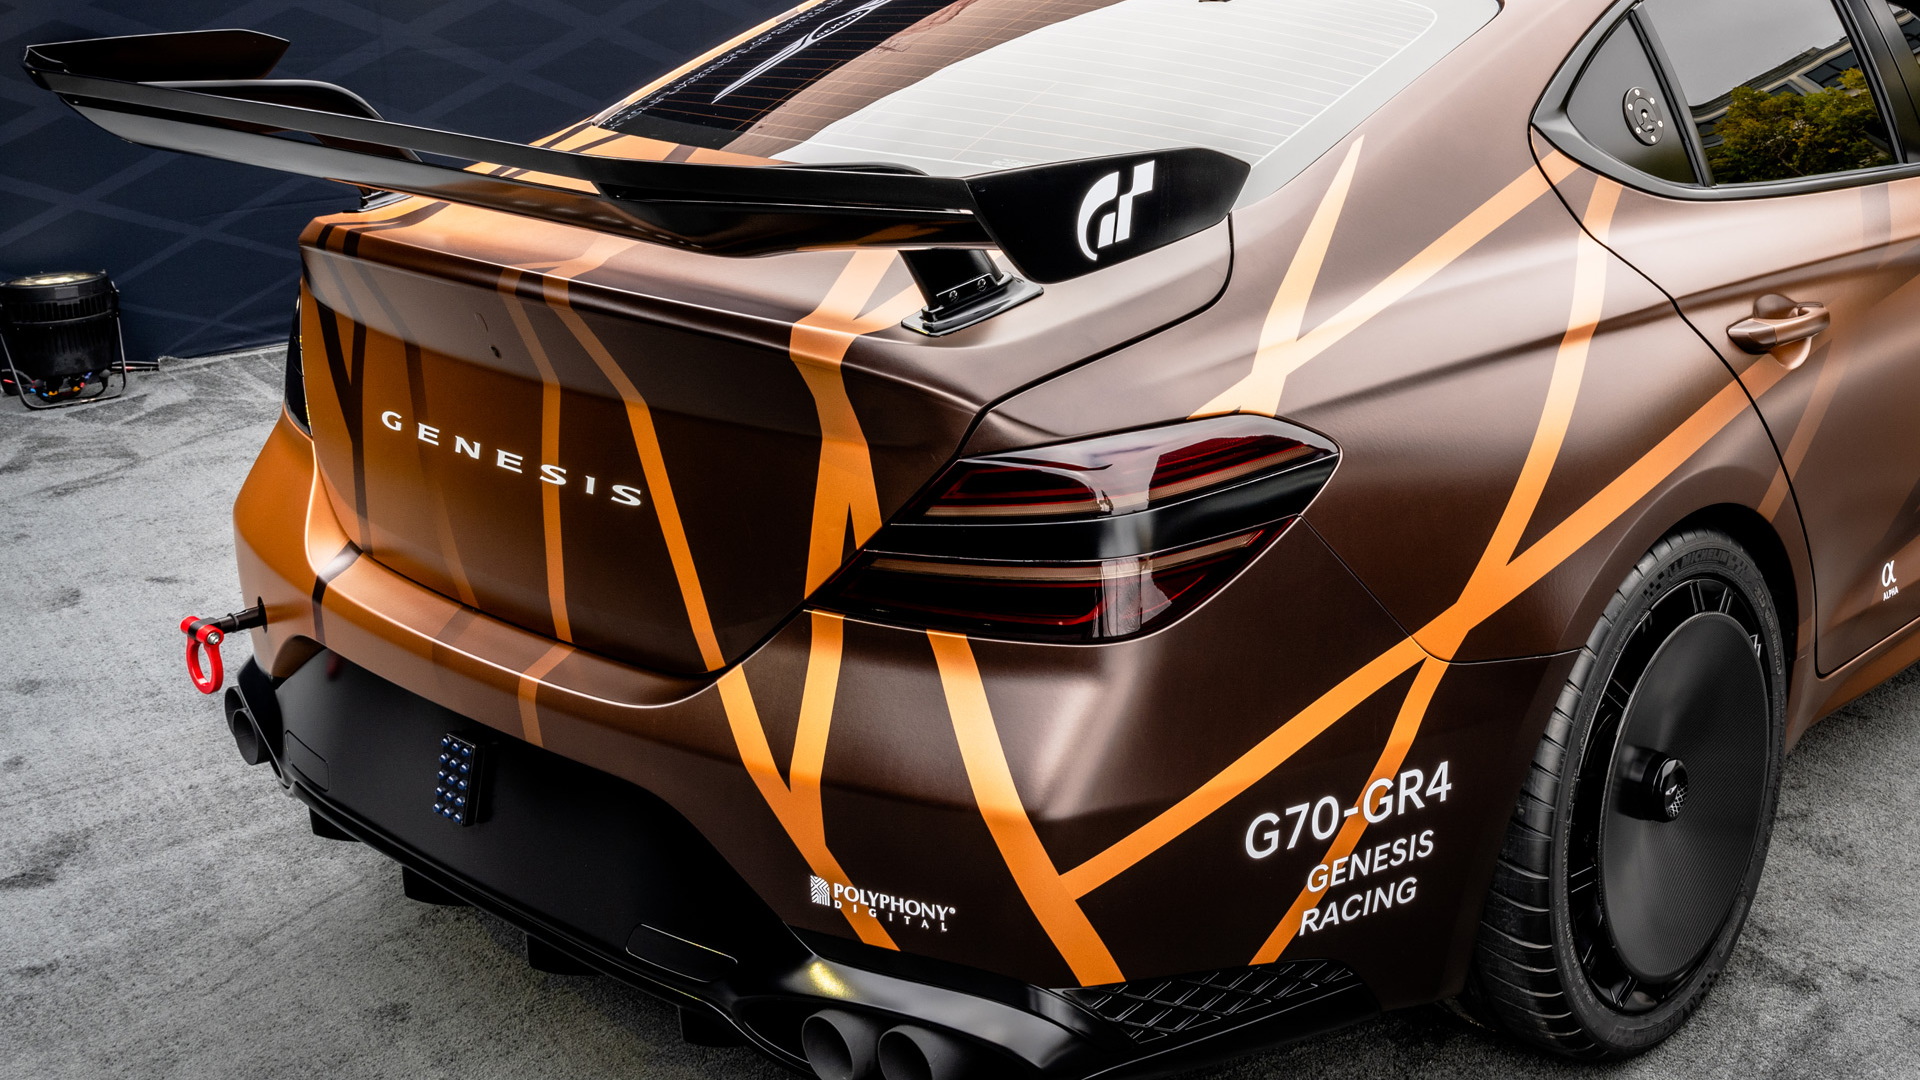 Genesis Gran Turismo concepts